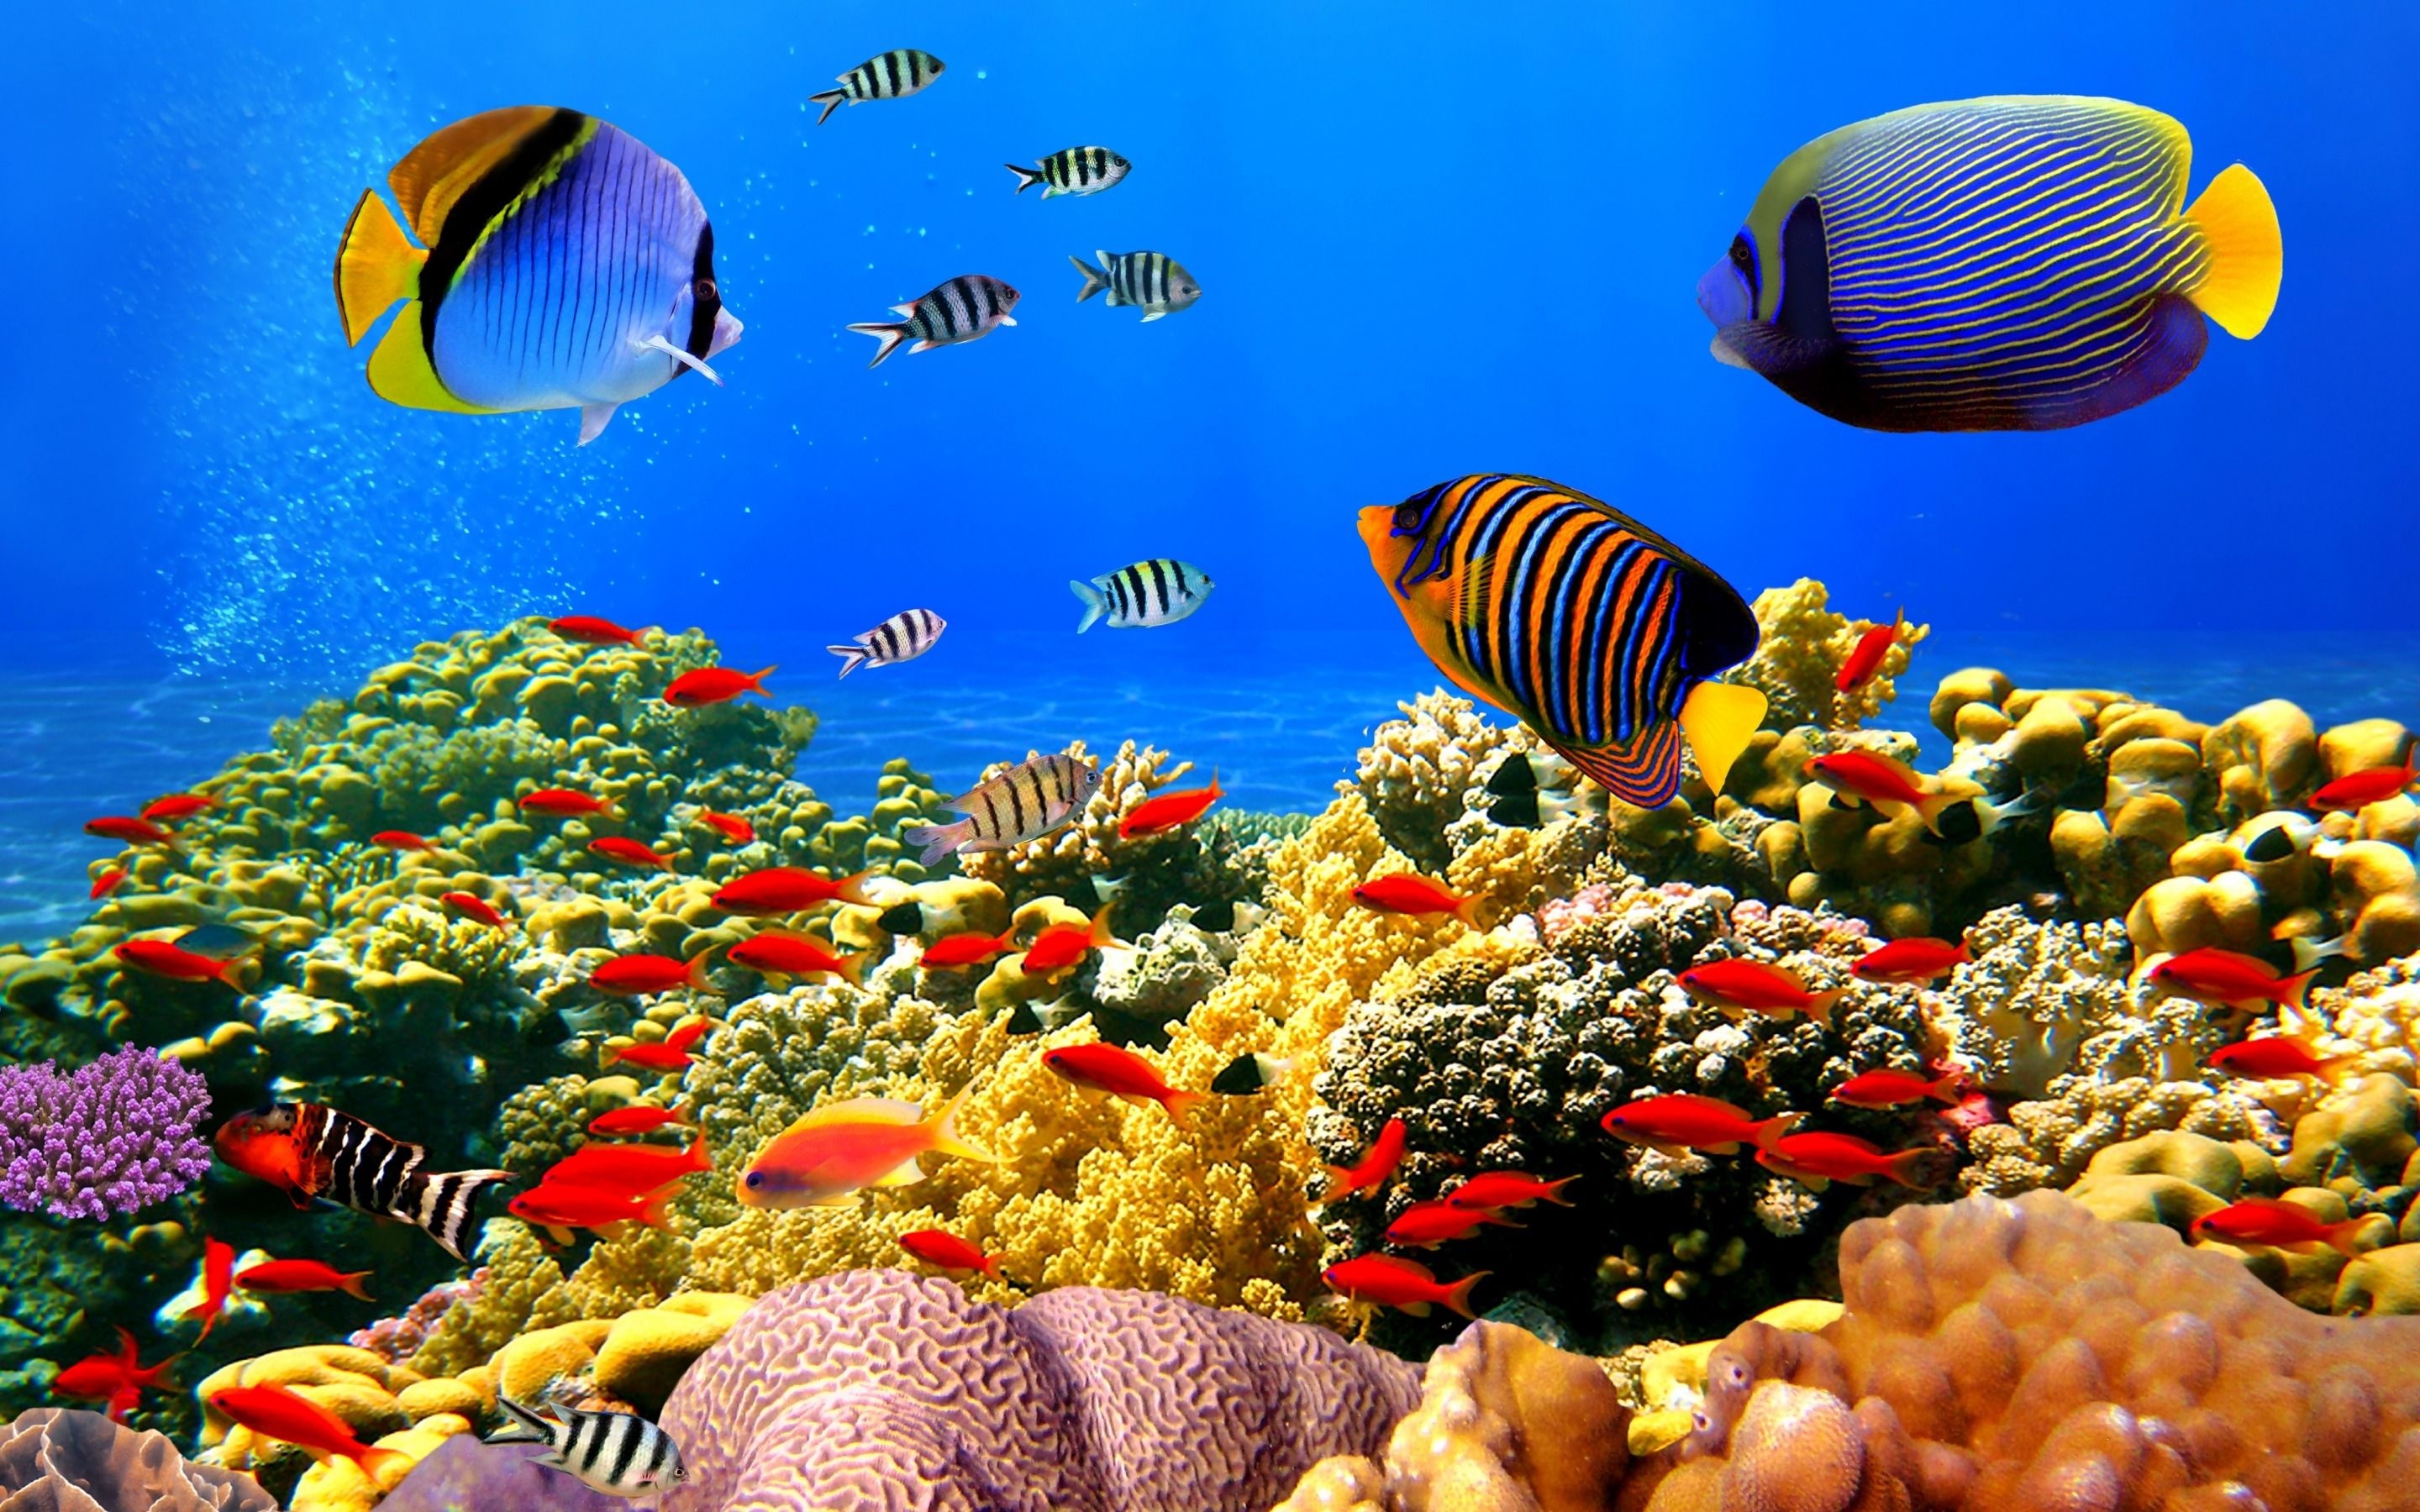 Fish desktop background, Stunning captures, Beautiful aquatic creatures, Vibrant underwater scenes, 2880x1800 HD Desktop